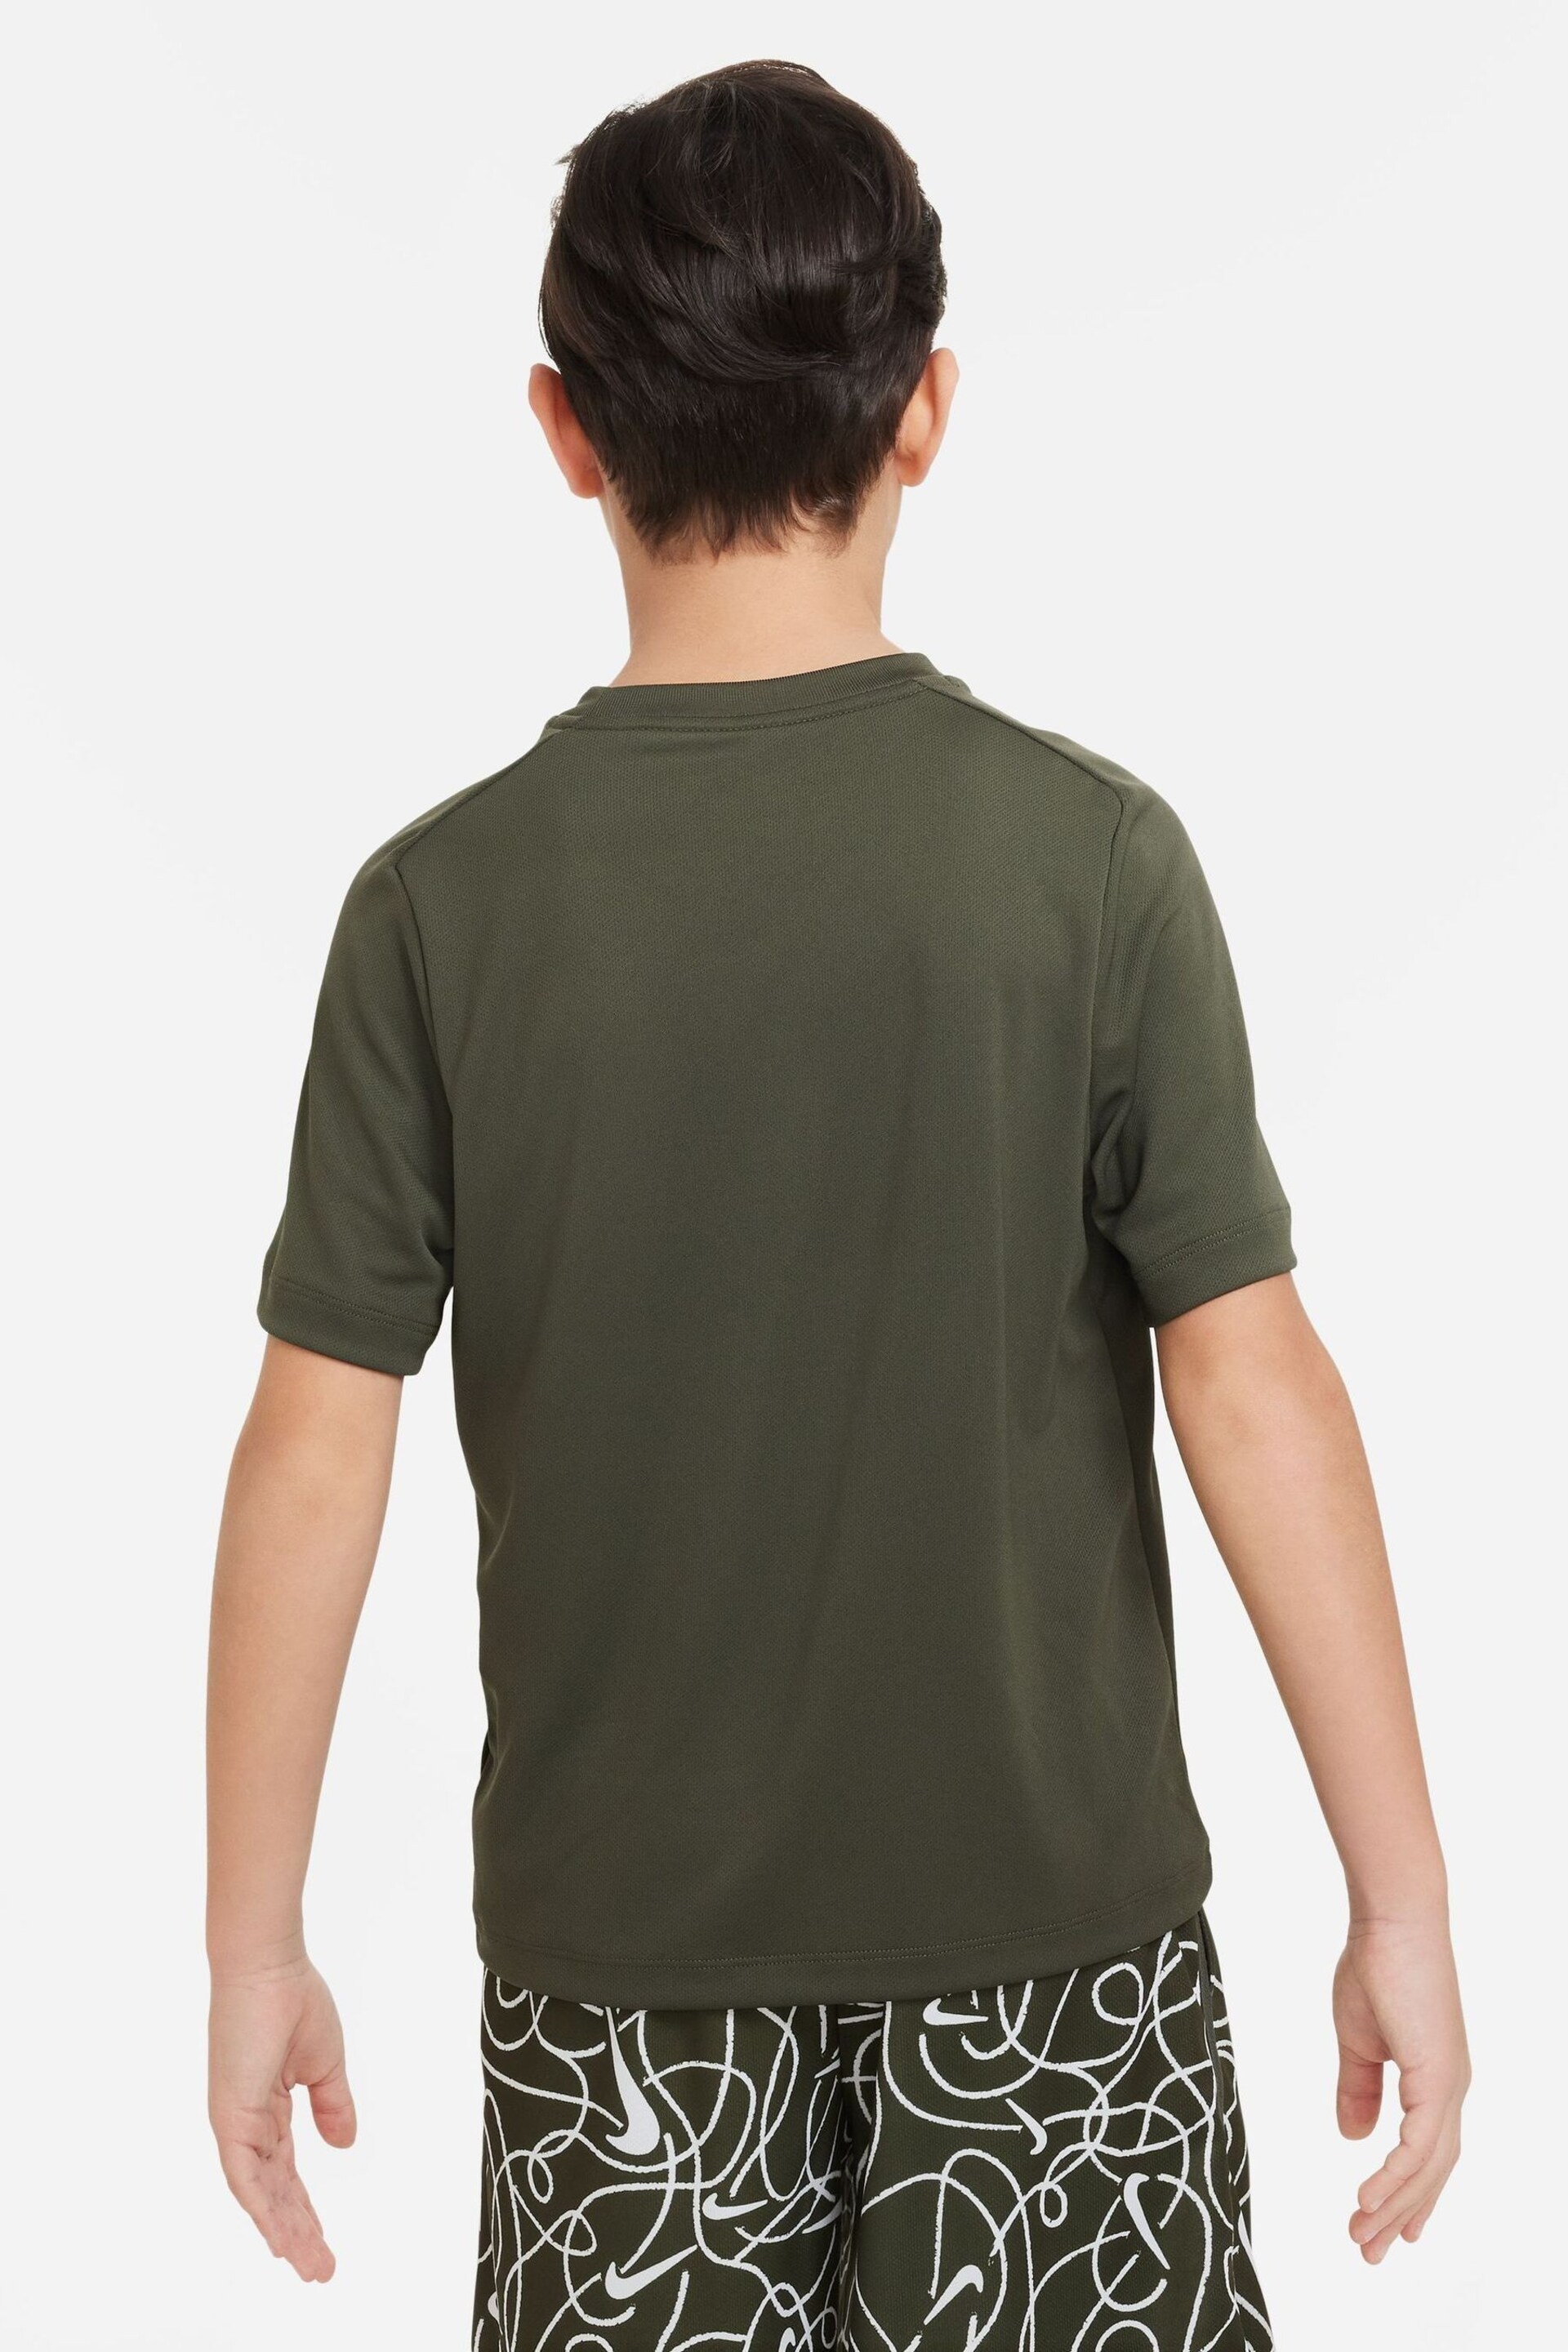 Nike Khaki Green Dri-FIT Multi + Training T-Shirt - Image 2 of 4